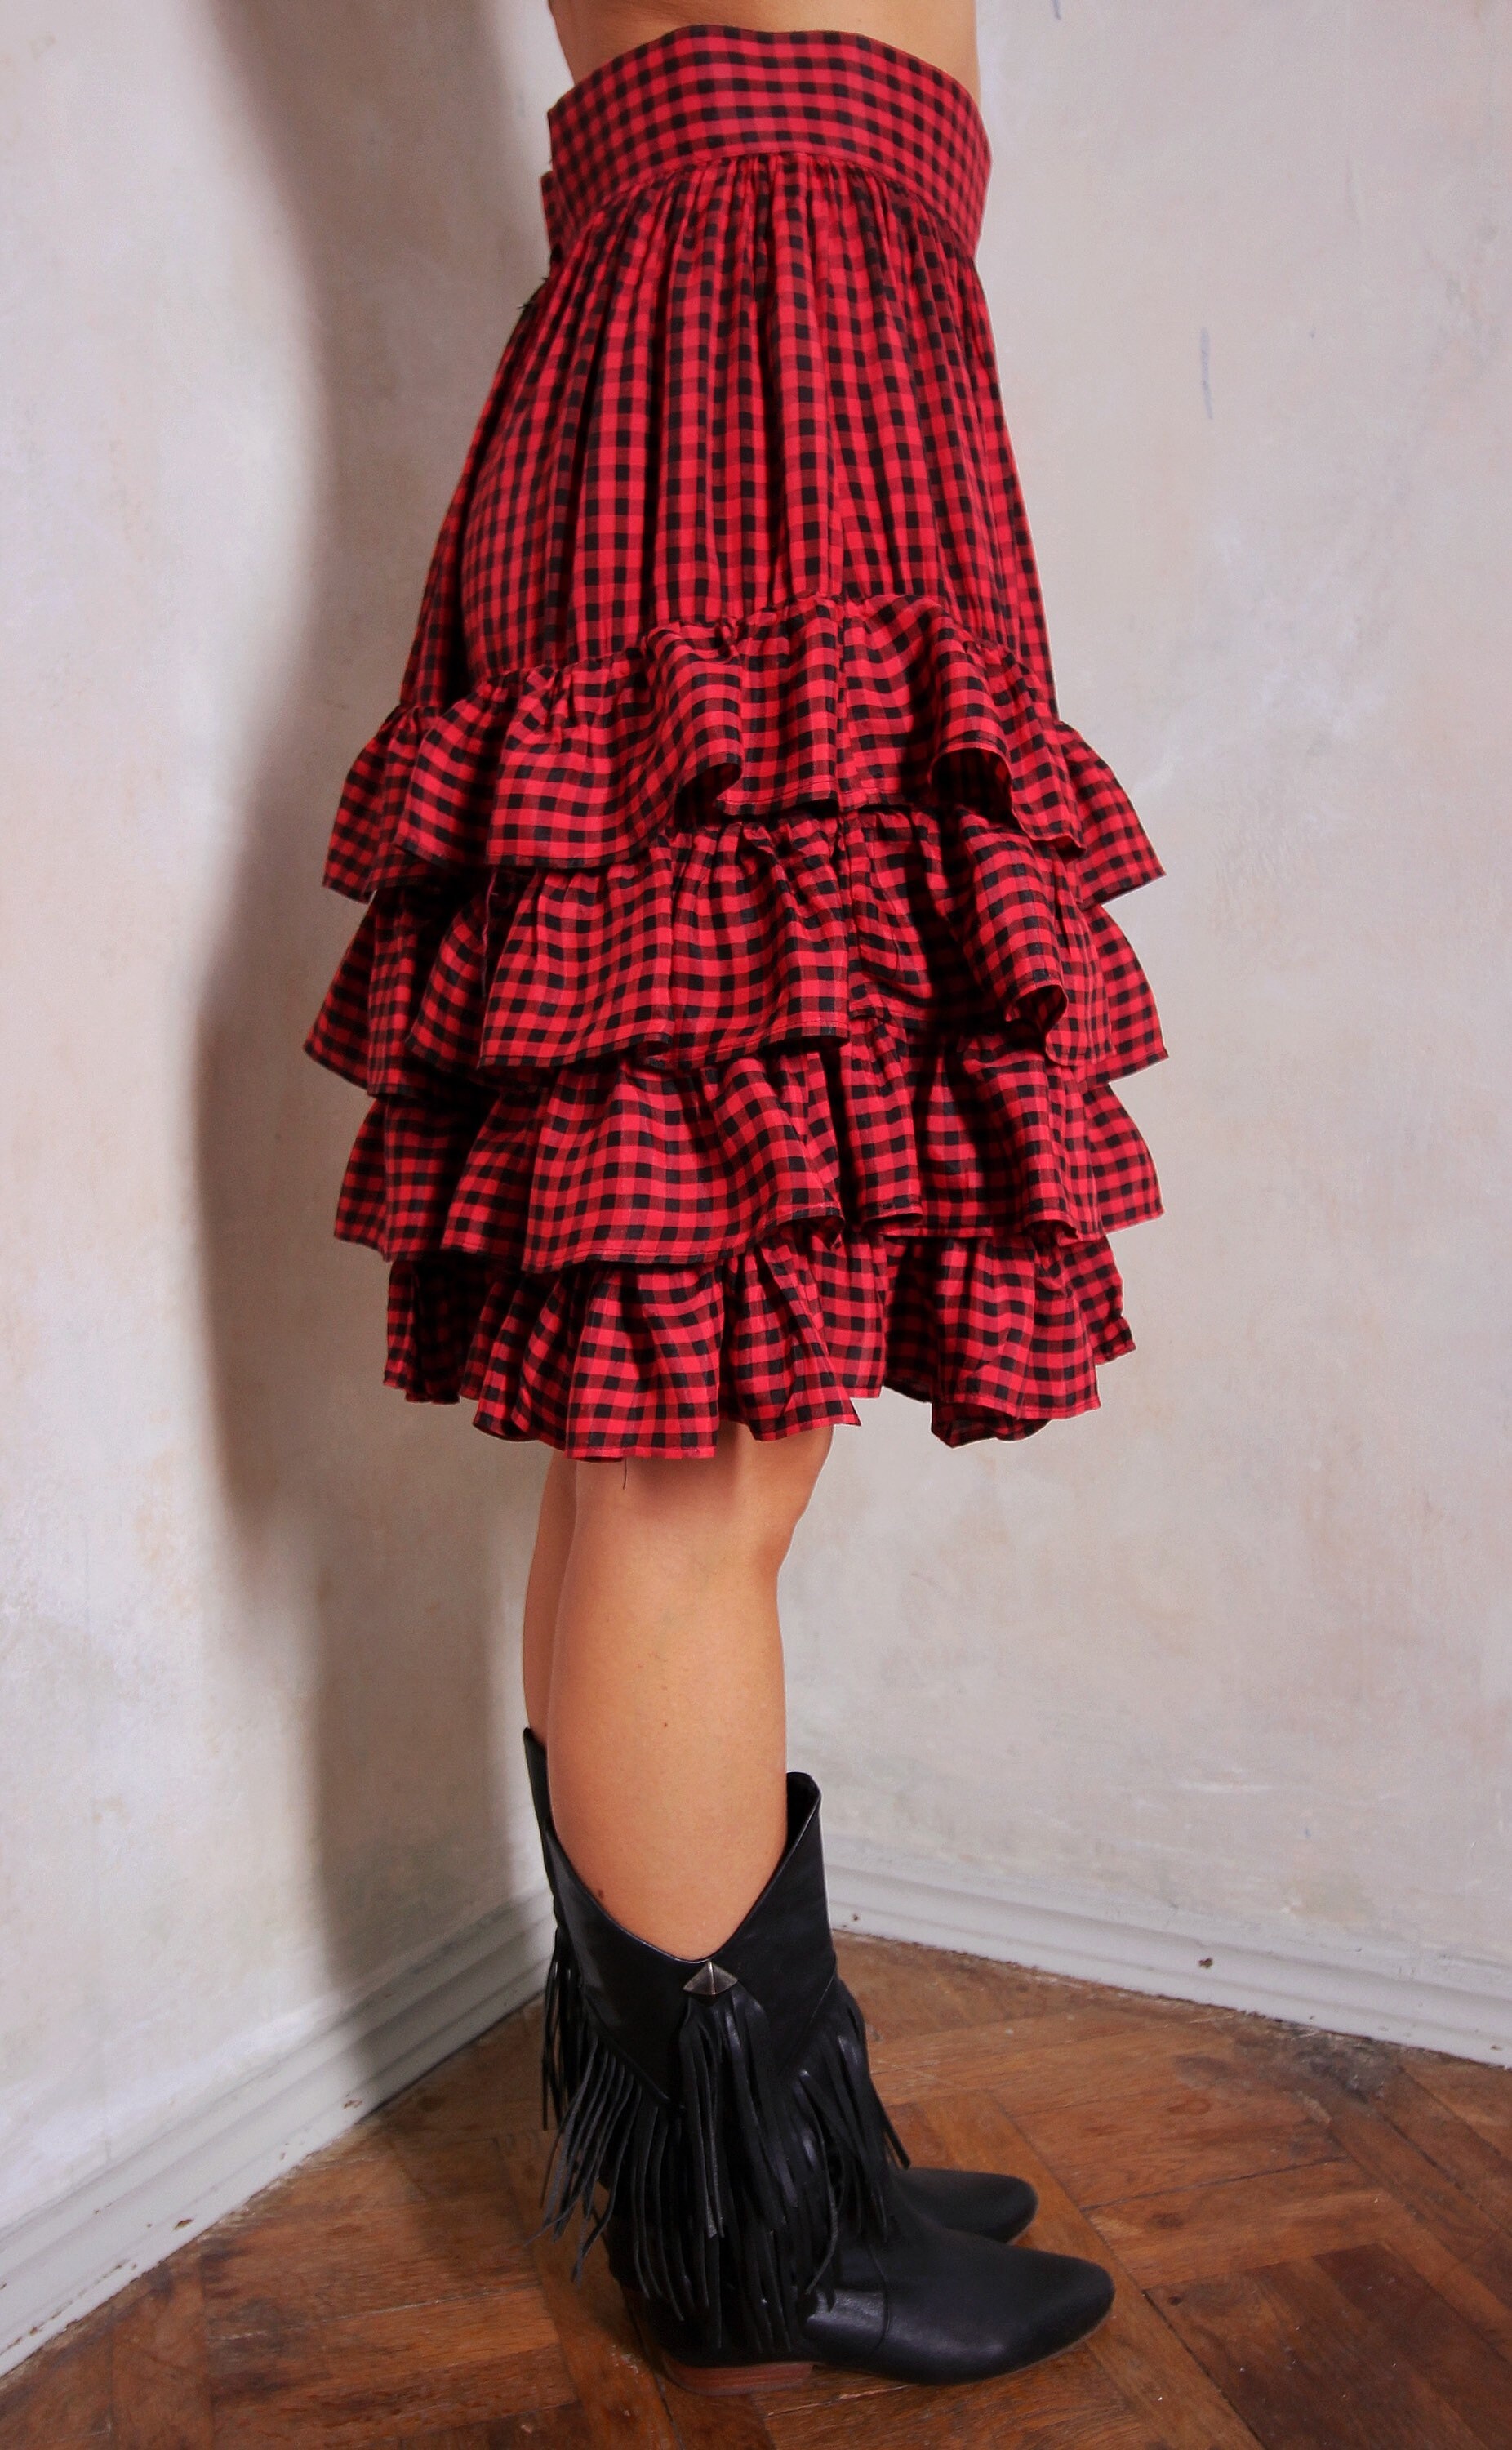 Ruffle Check 80s Vintage Skirt High Waist Skirt Short - Etsy UK